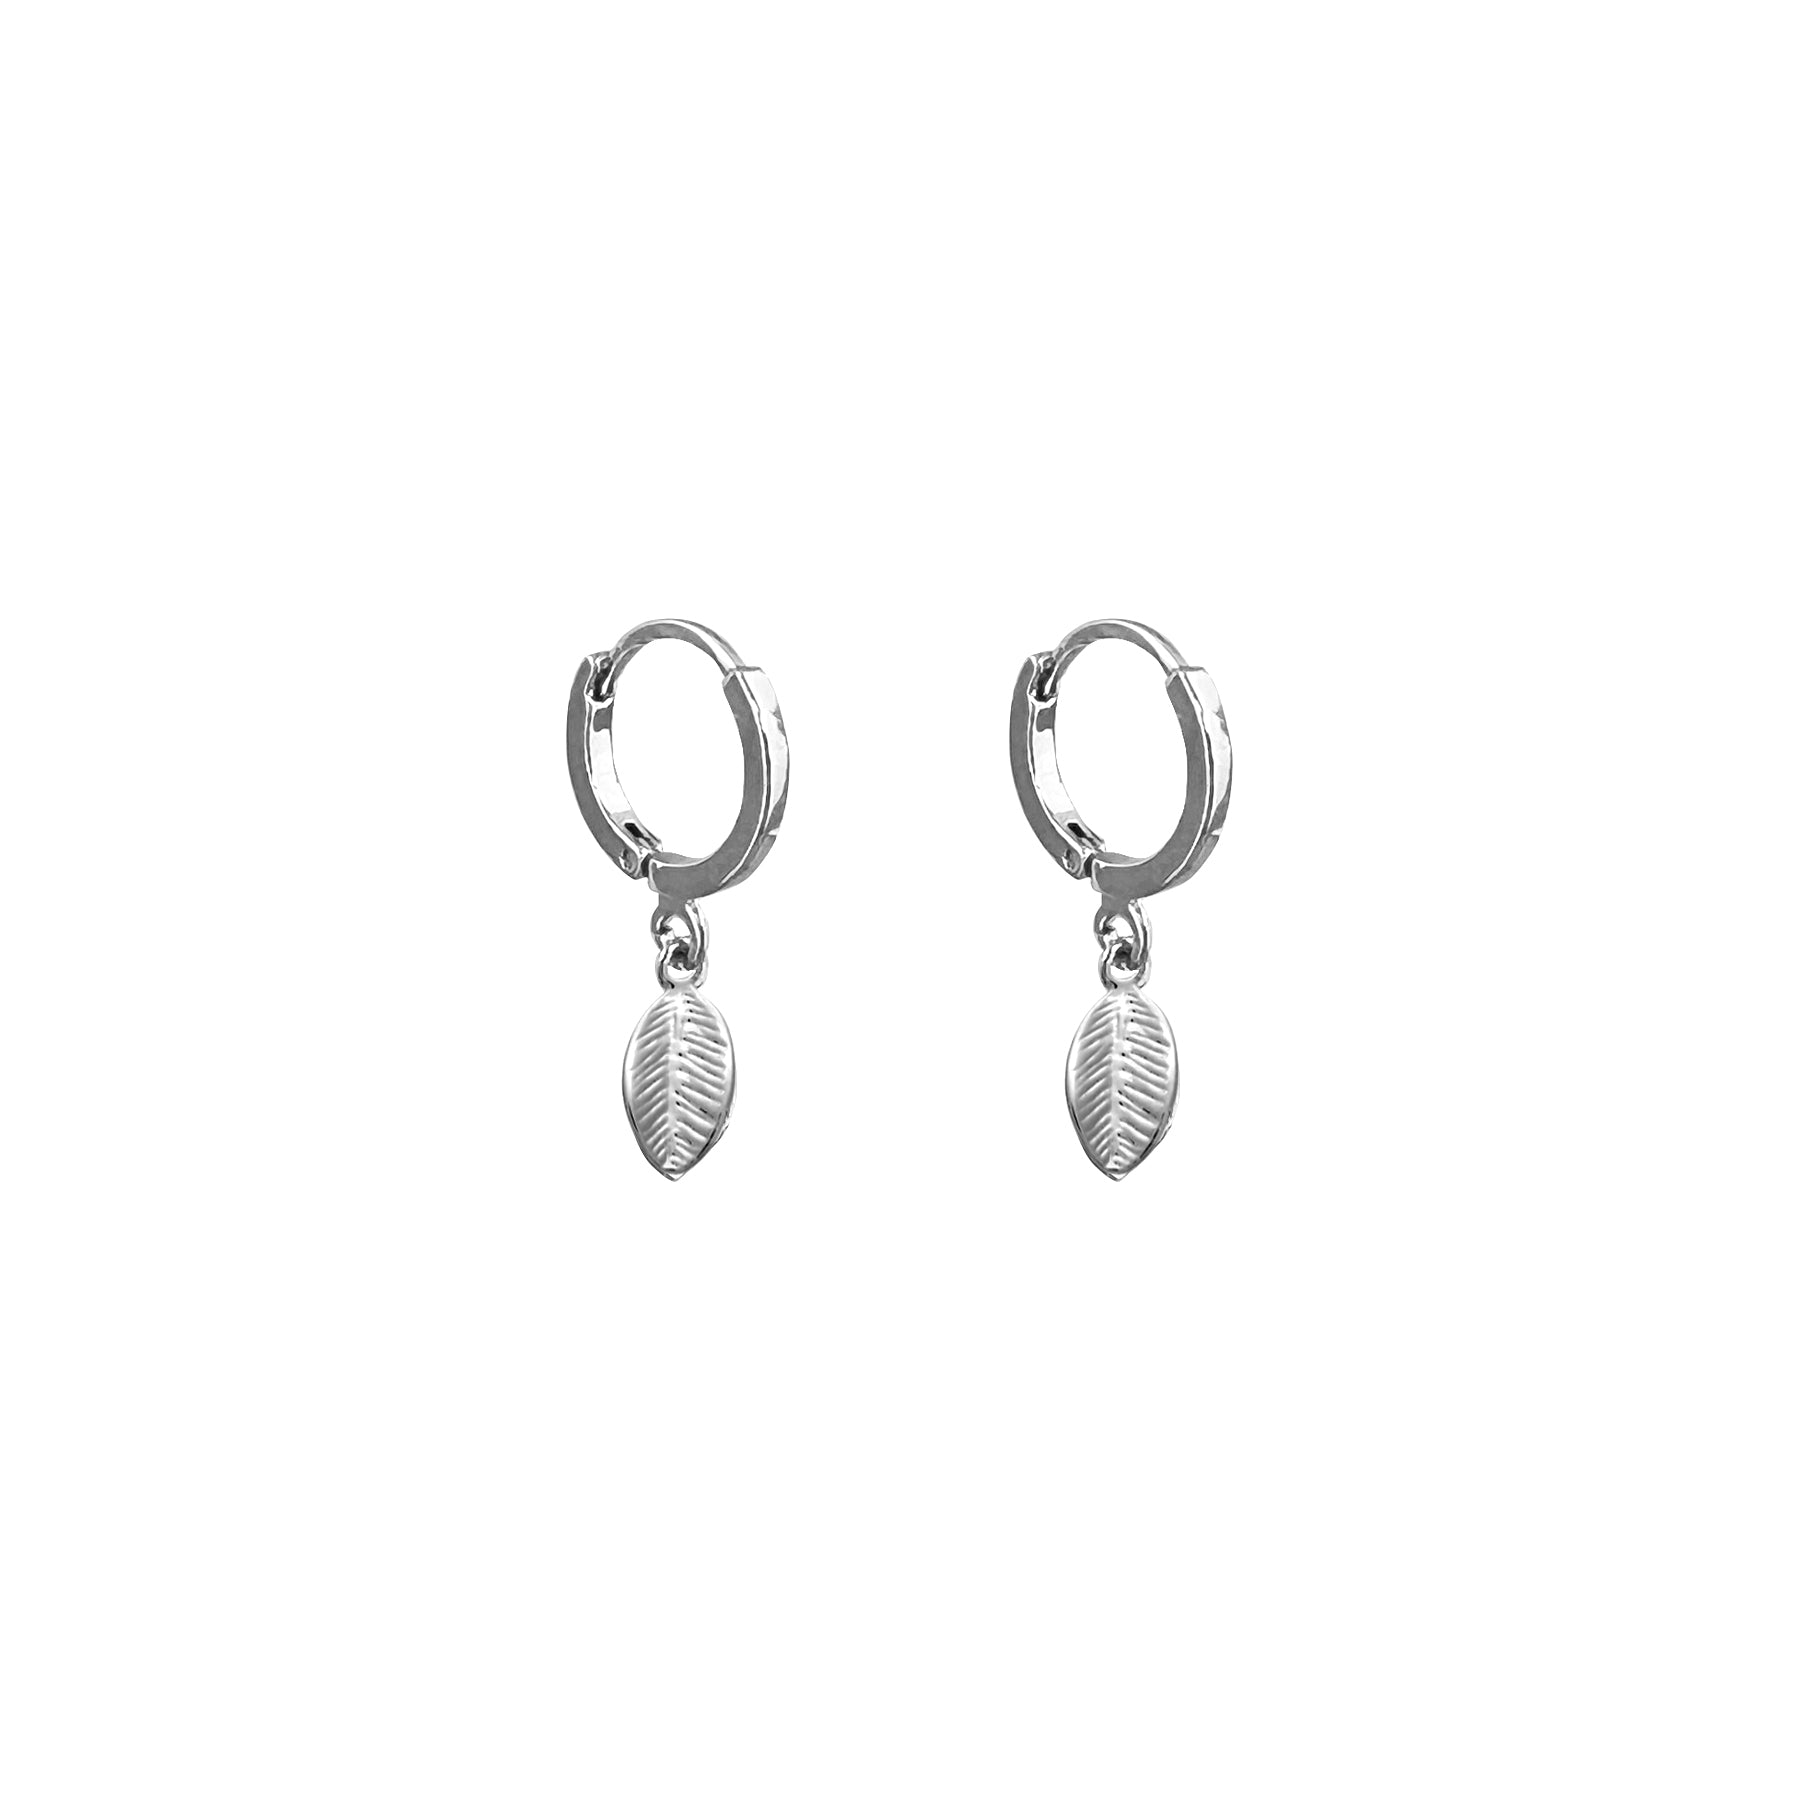 Silver hoop earrings and leaf pendants